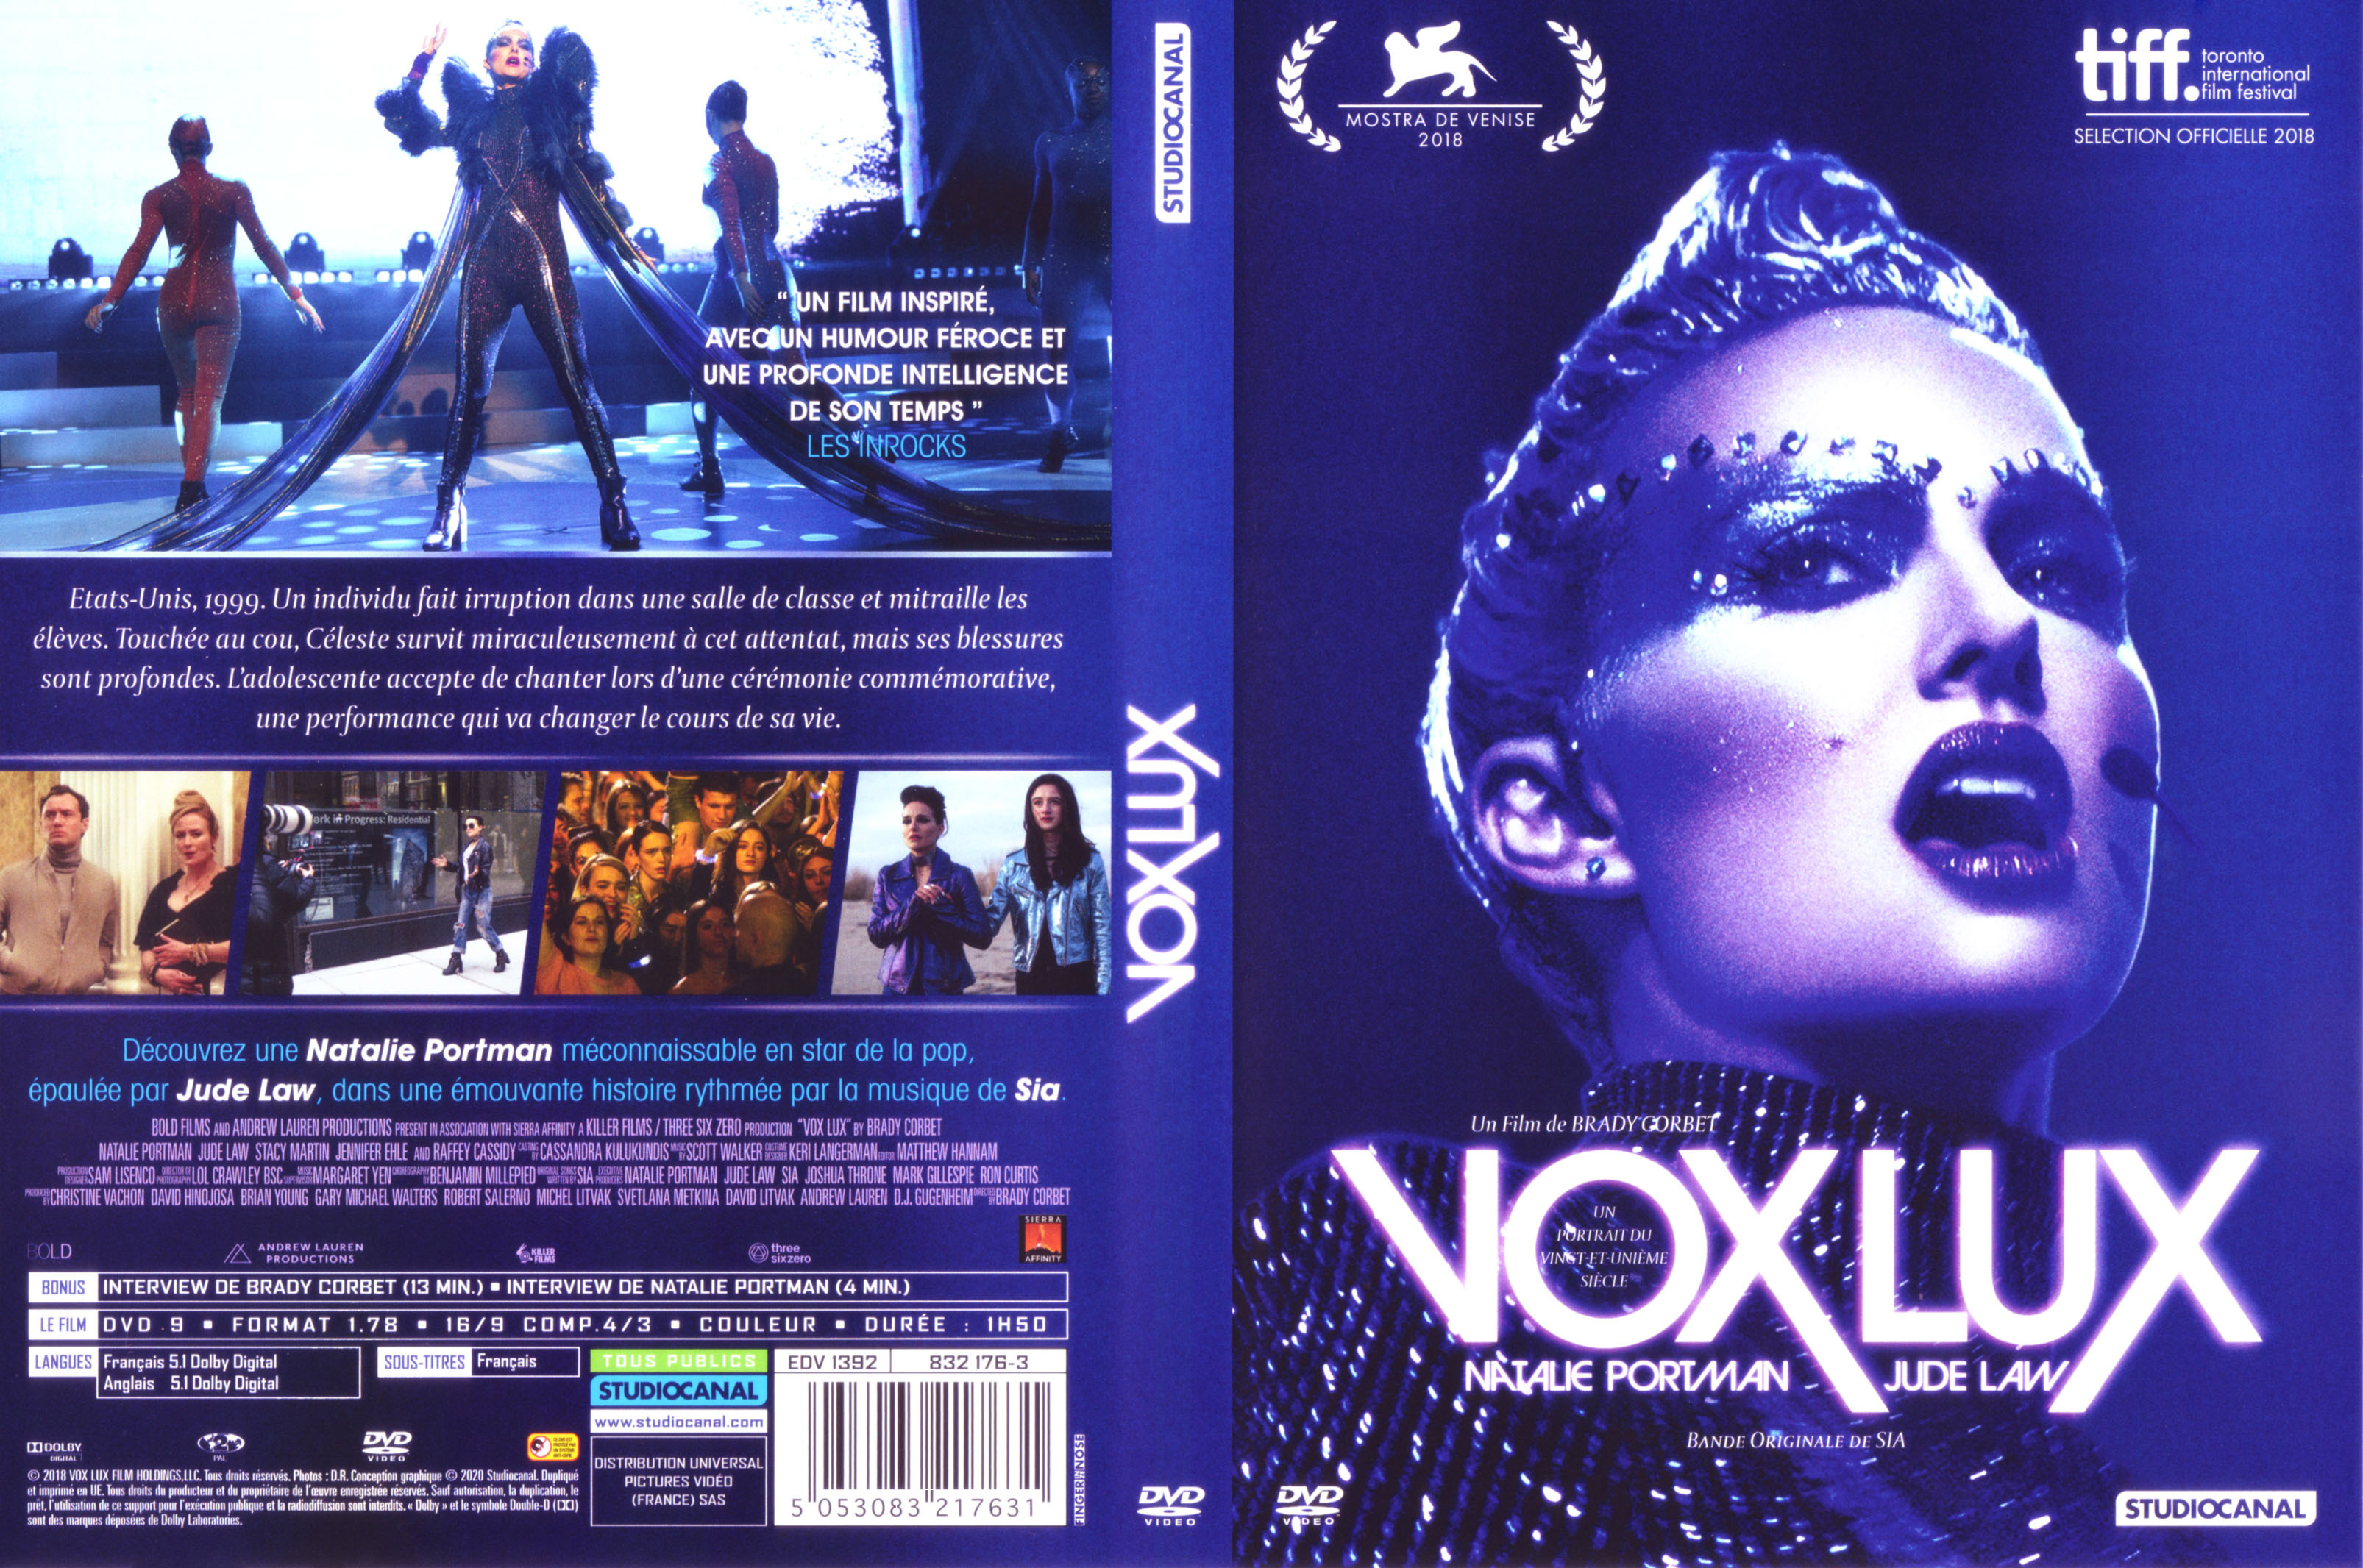 Jaquette DVD Vox lux